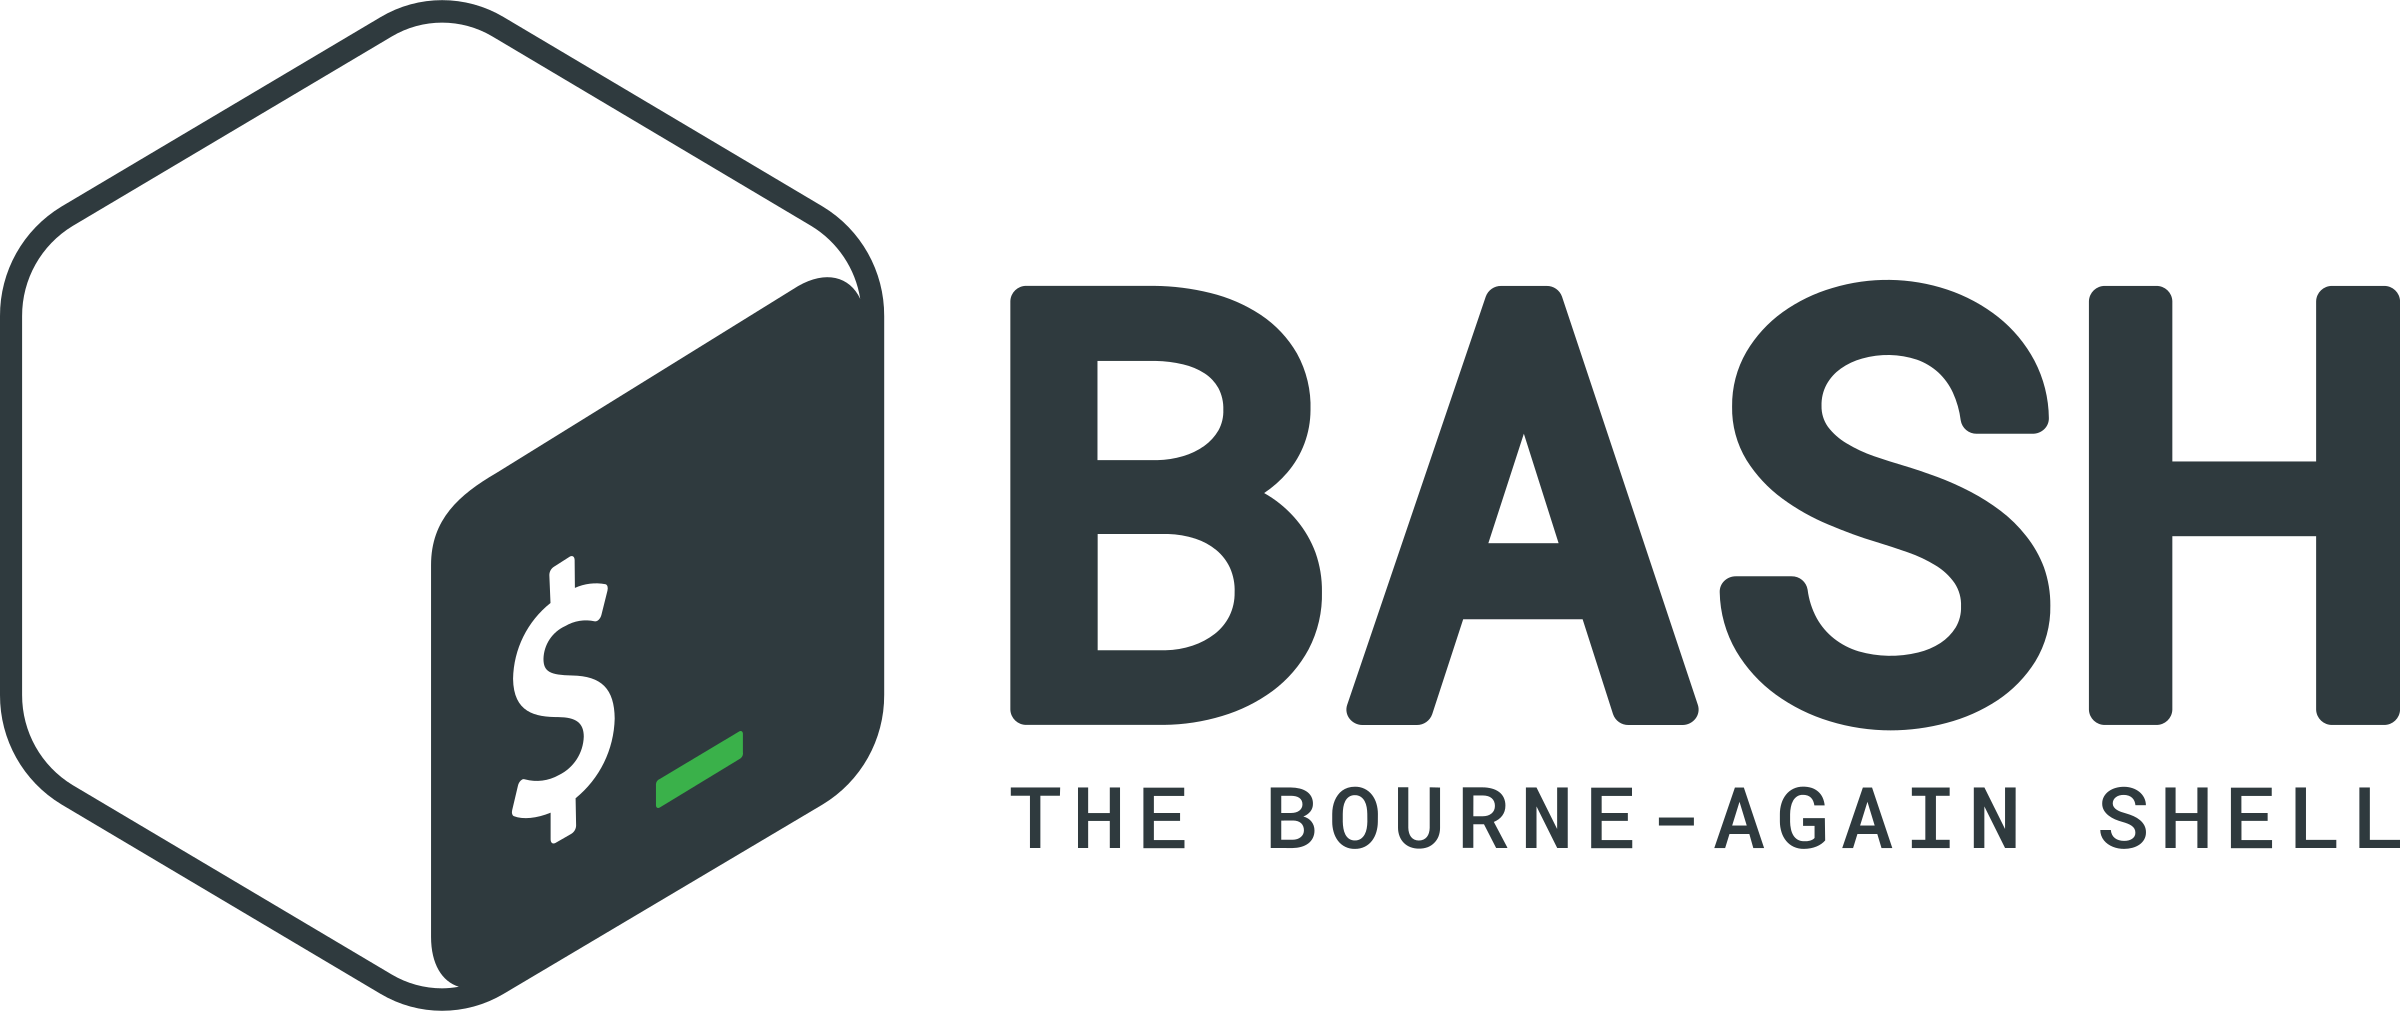 BASH Logo